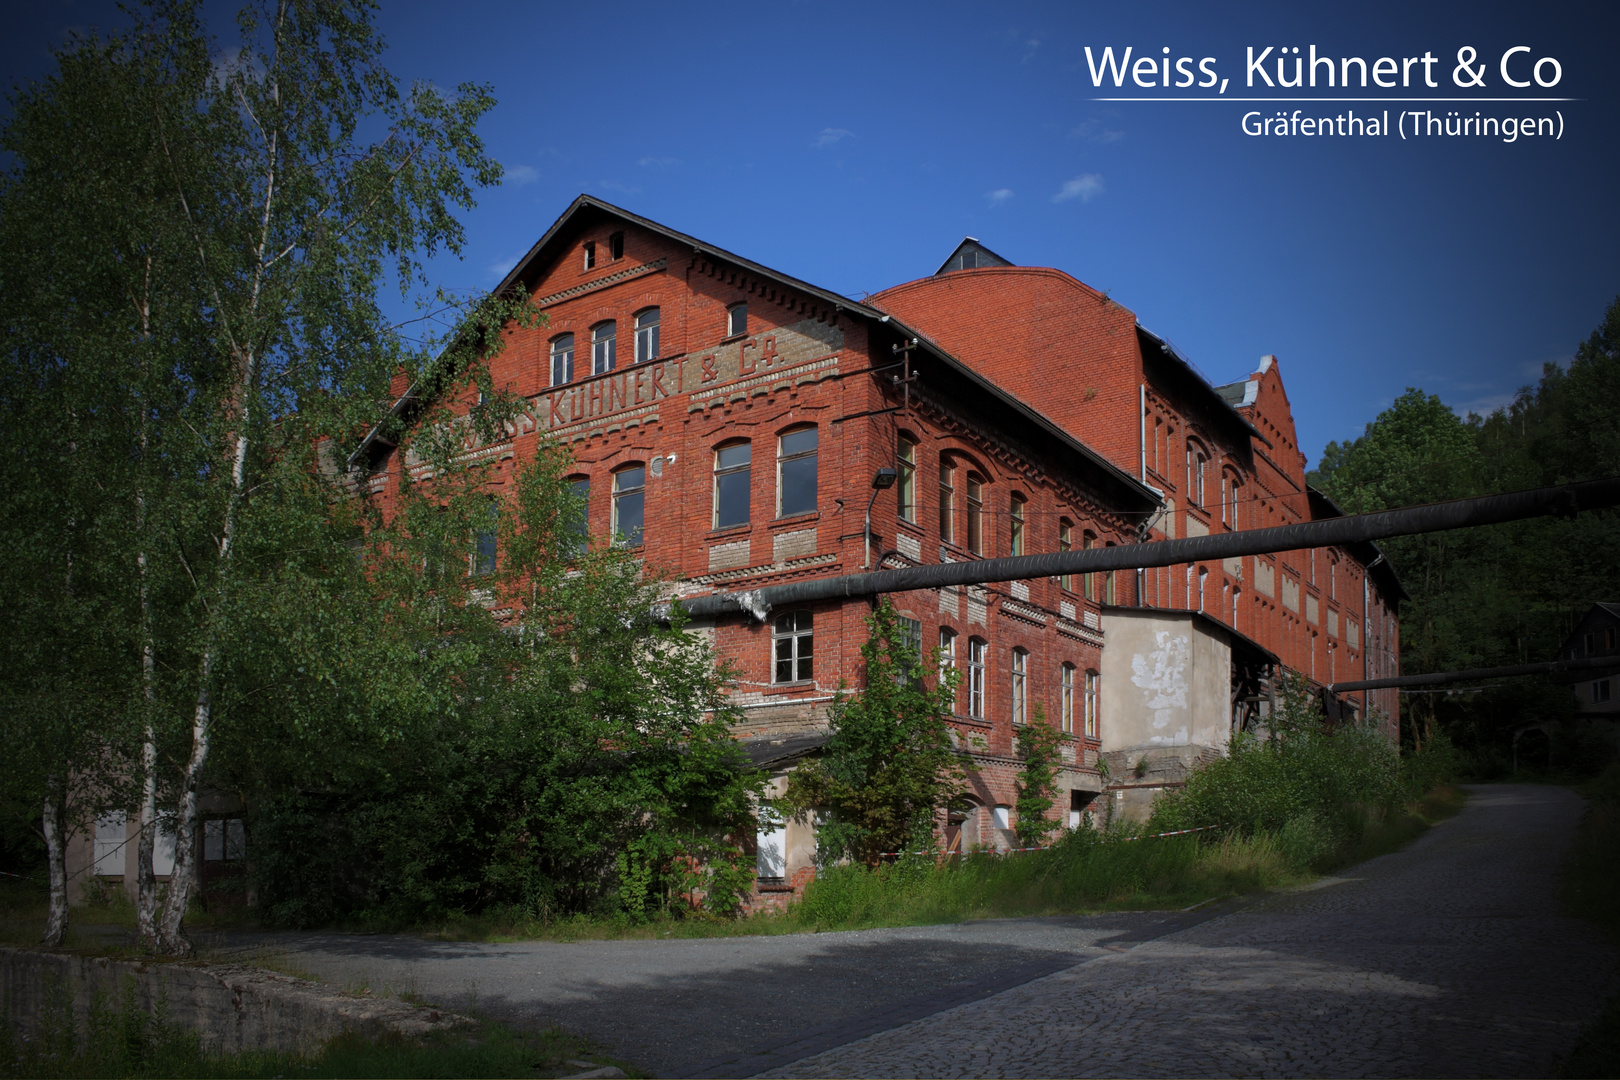 Weiss, Kühnert & Co in Gräfenthal